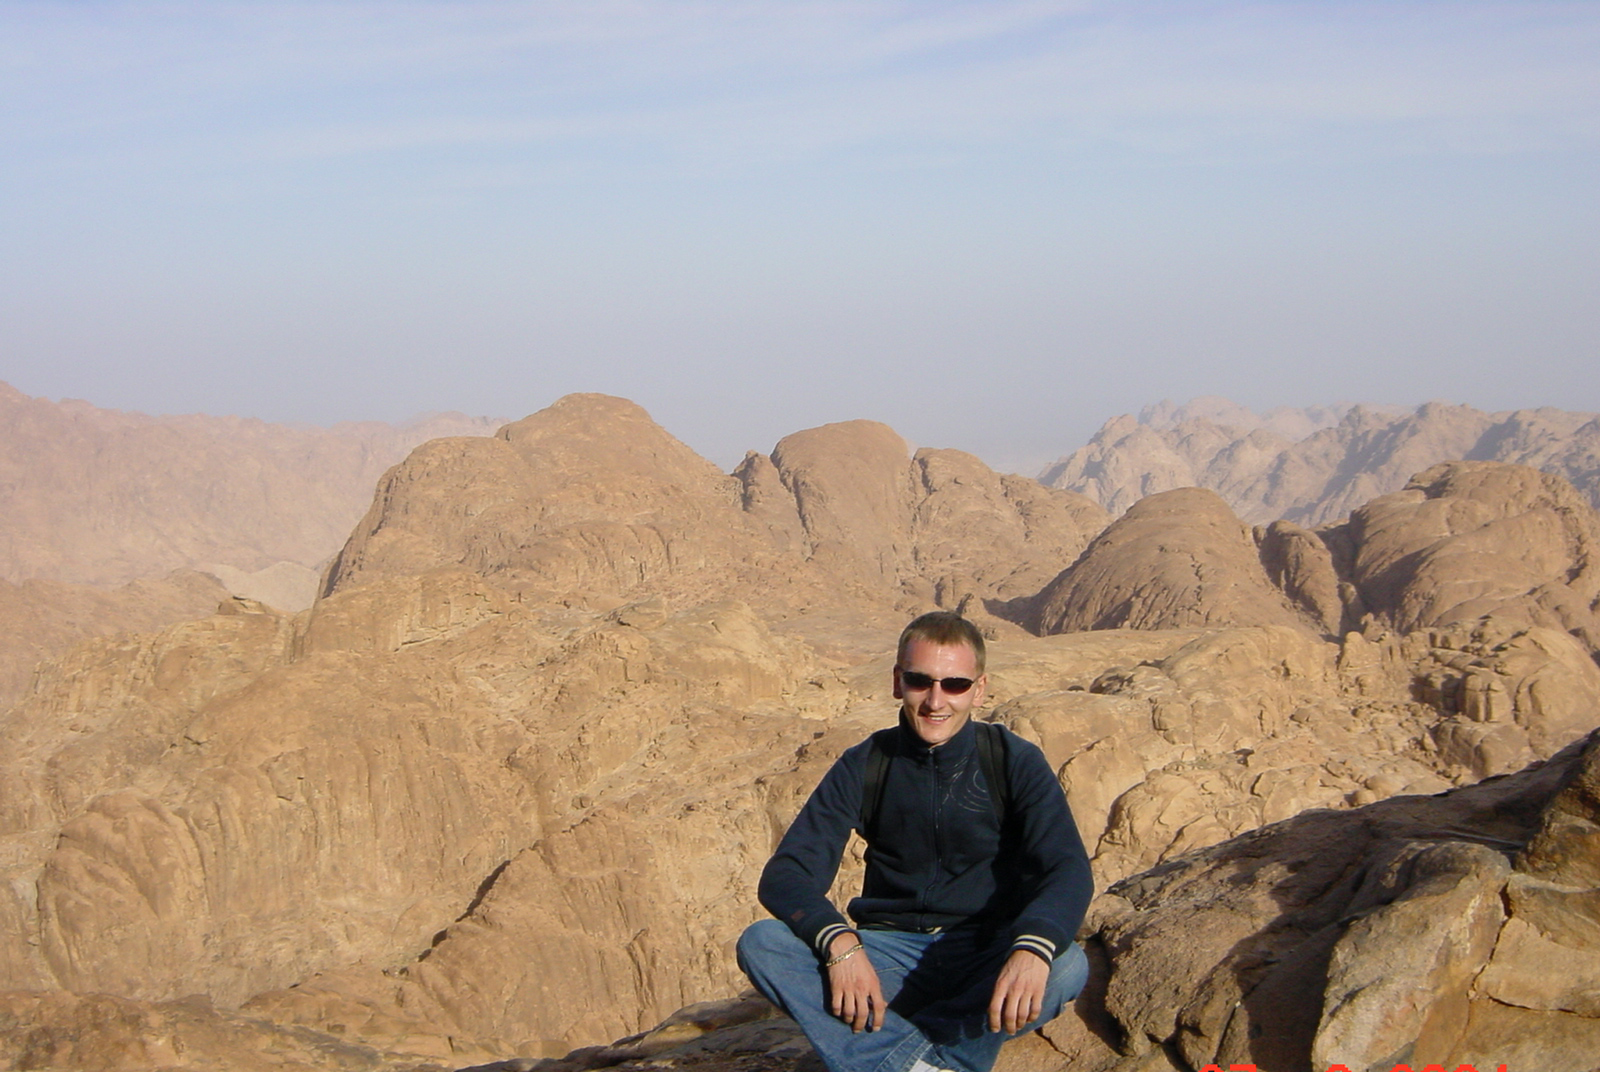  
Visite du mont Sinaï